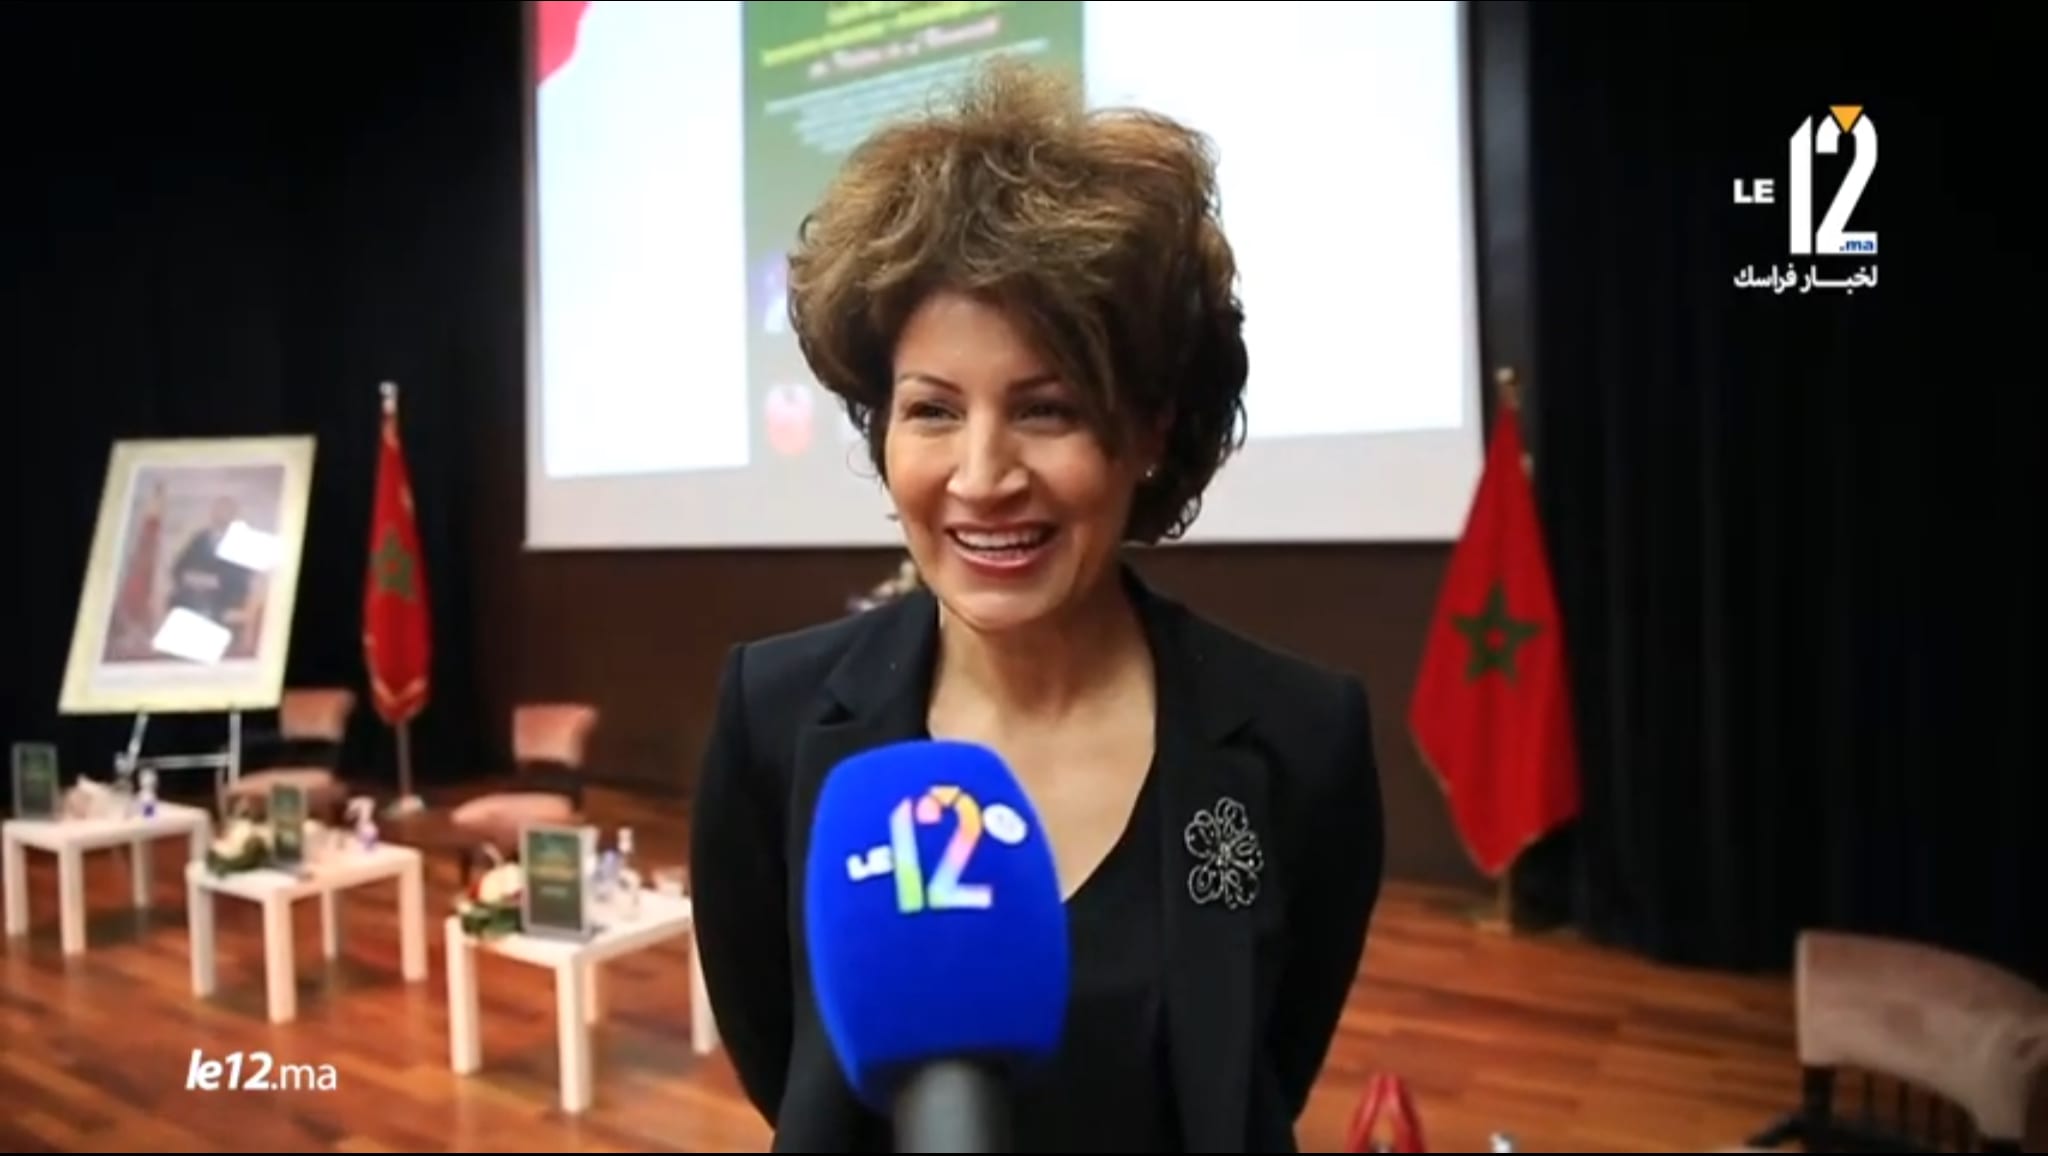 انتخاب نزهة بدوان رئيسة المكتب المديري الجديد للجامعة الملكية المغربية للرياضة للجميع